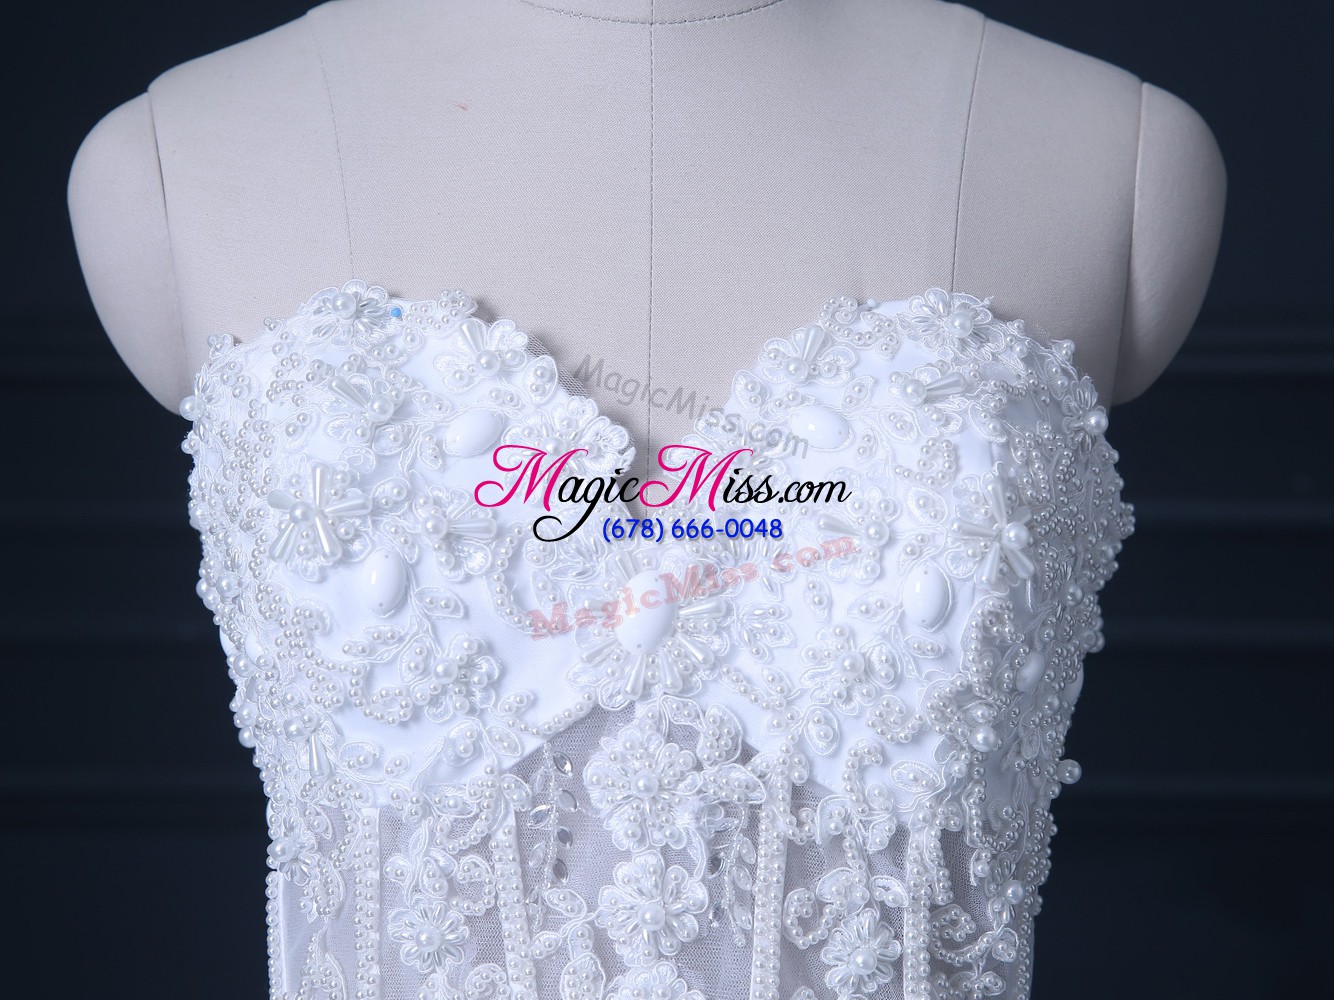 wholesale adorable white lace up sweetheart beading wedding dress tulle sleeveless brush train